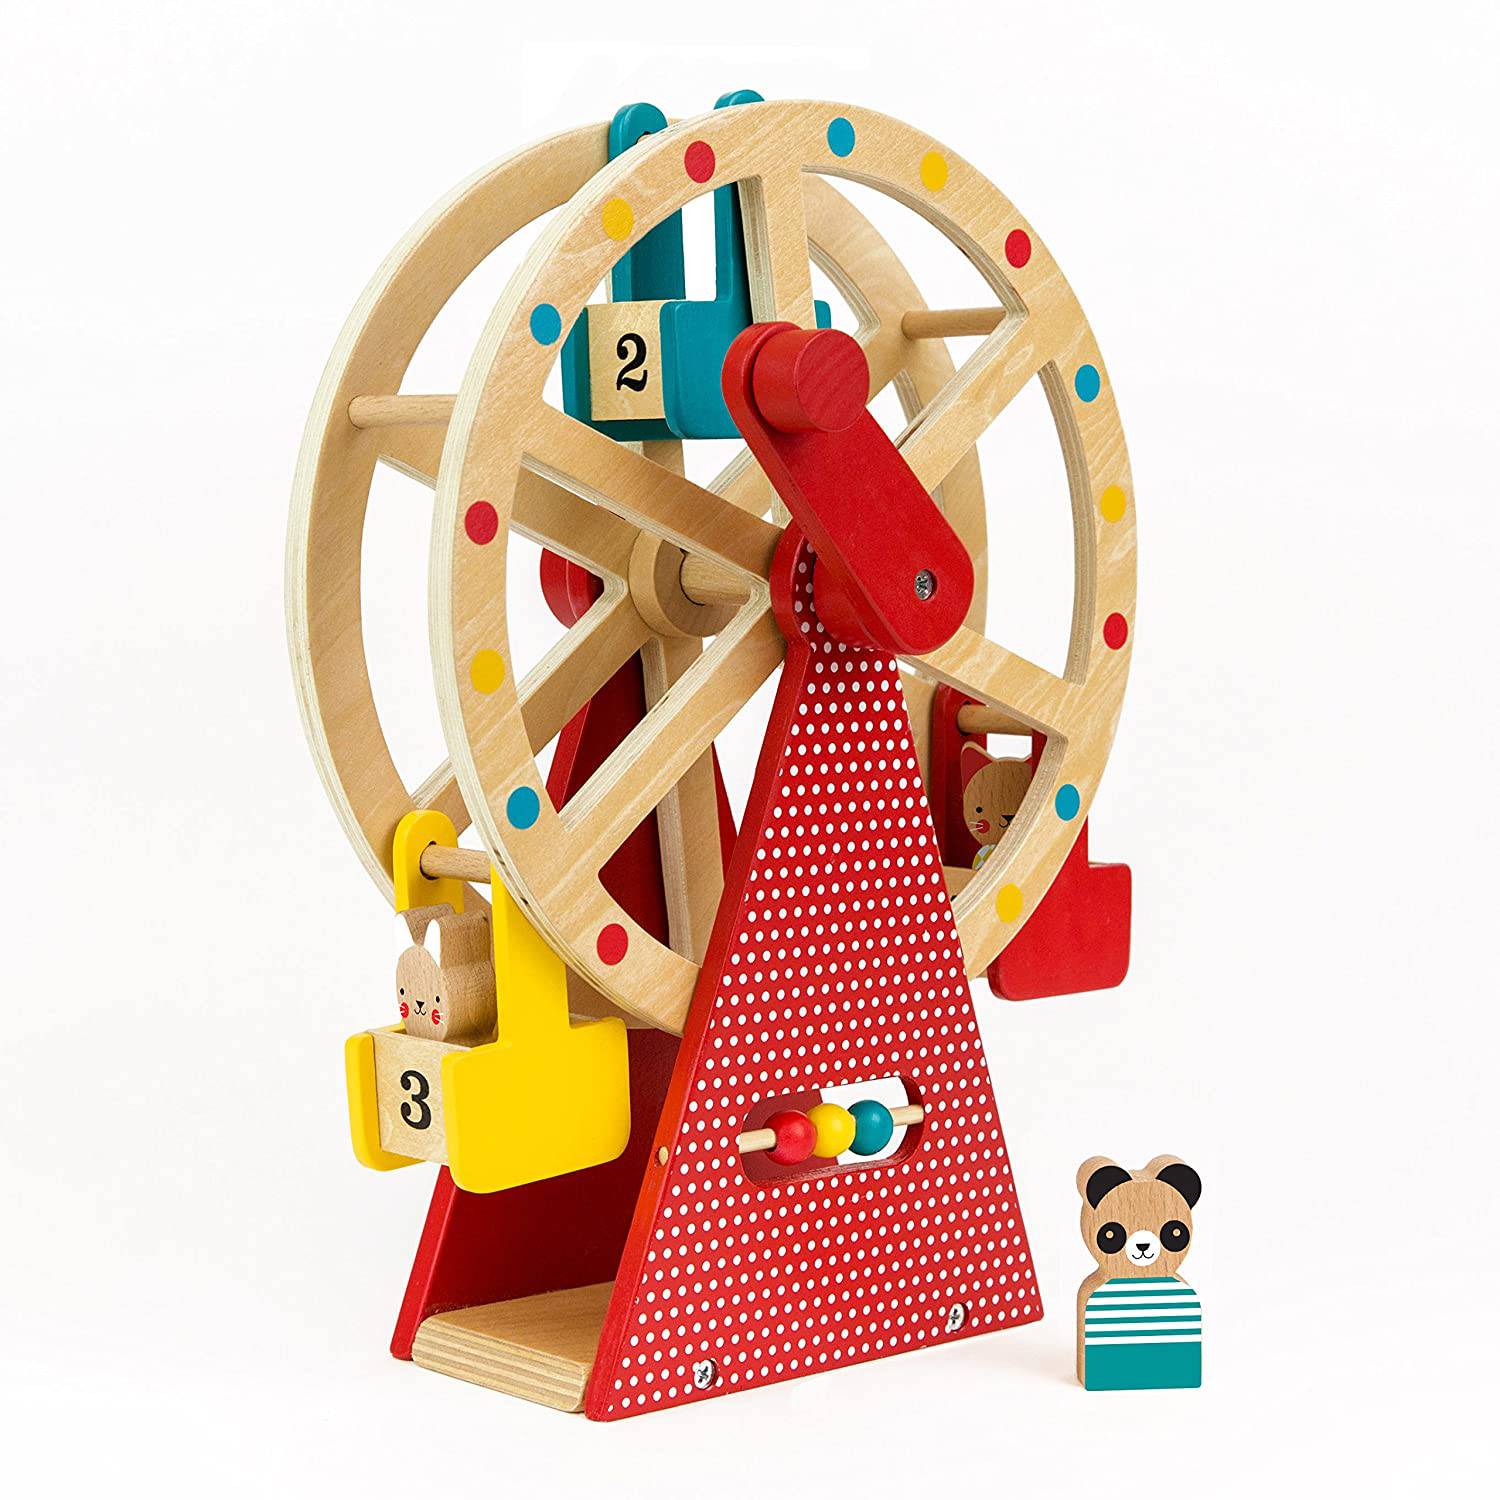 Carnival Play Set Wooden Ferris Wheel - Twinkle Twinkle Little One